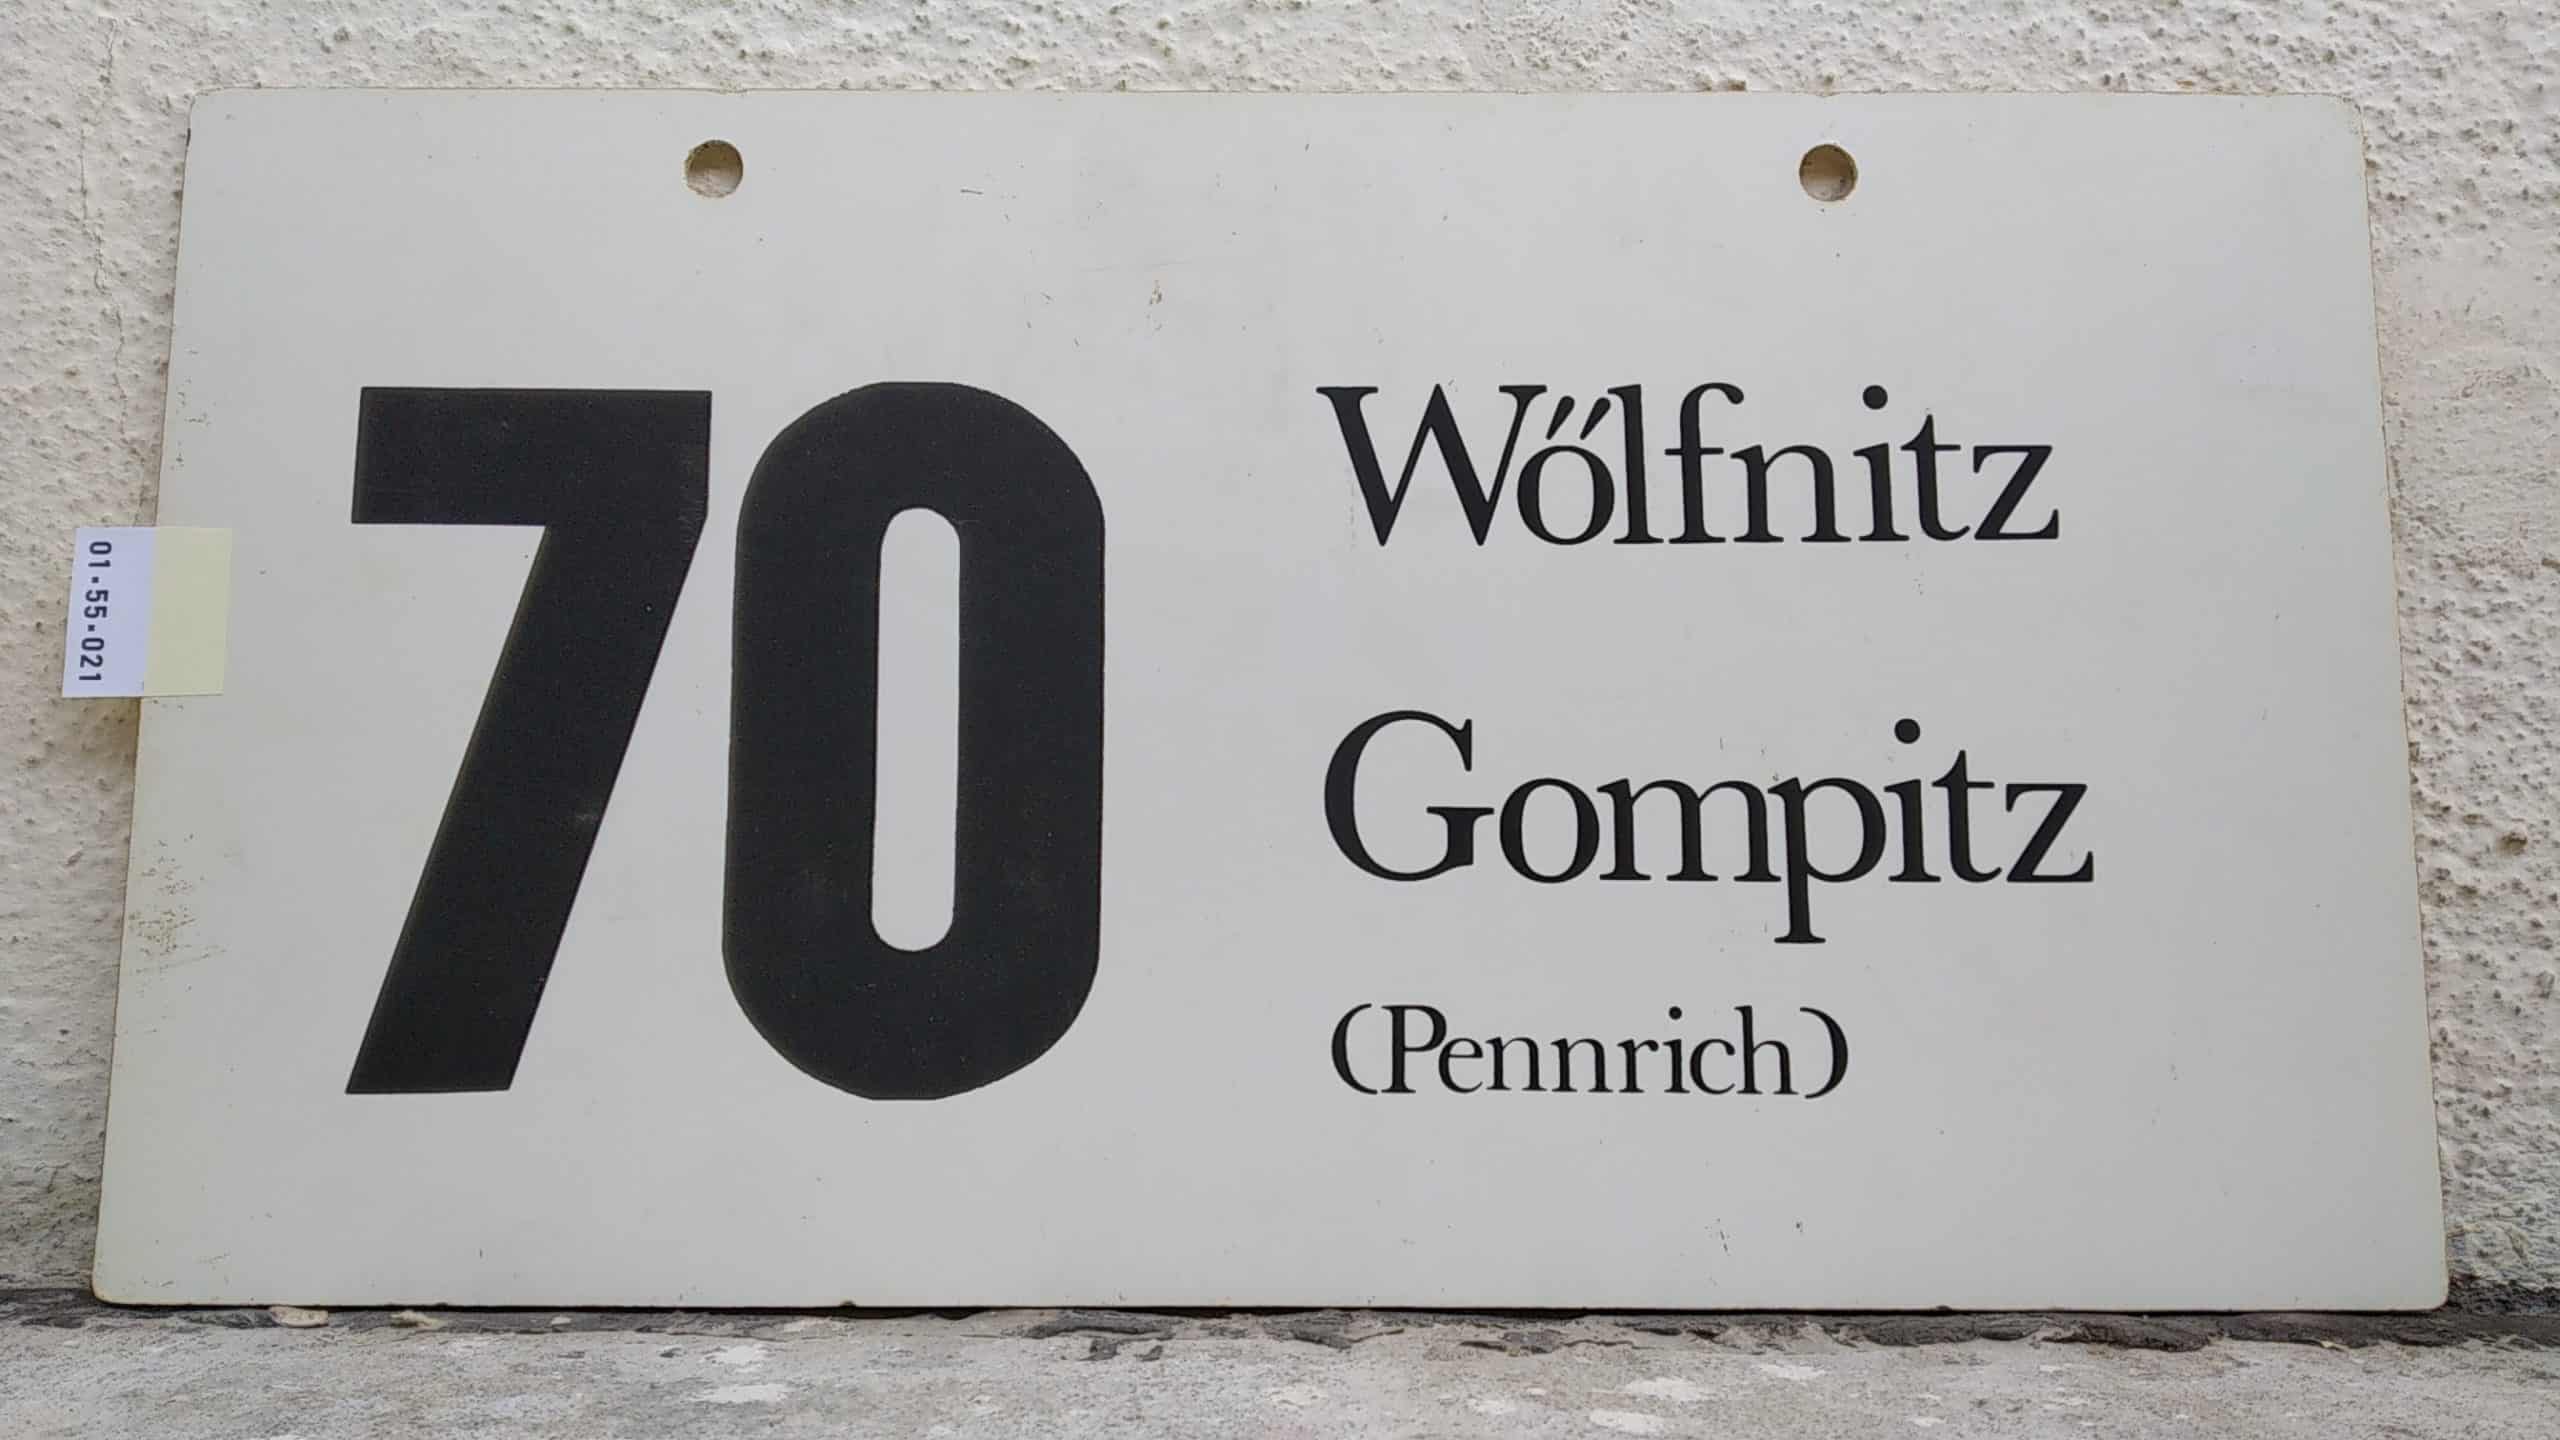 Ein seltenes Bus-Linienschild aus Dresden der Linie 70 von Wölfnitz nach Gompitz (Pennrich)